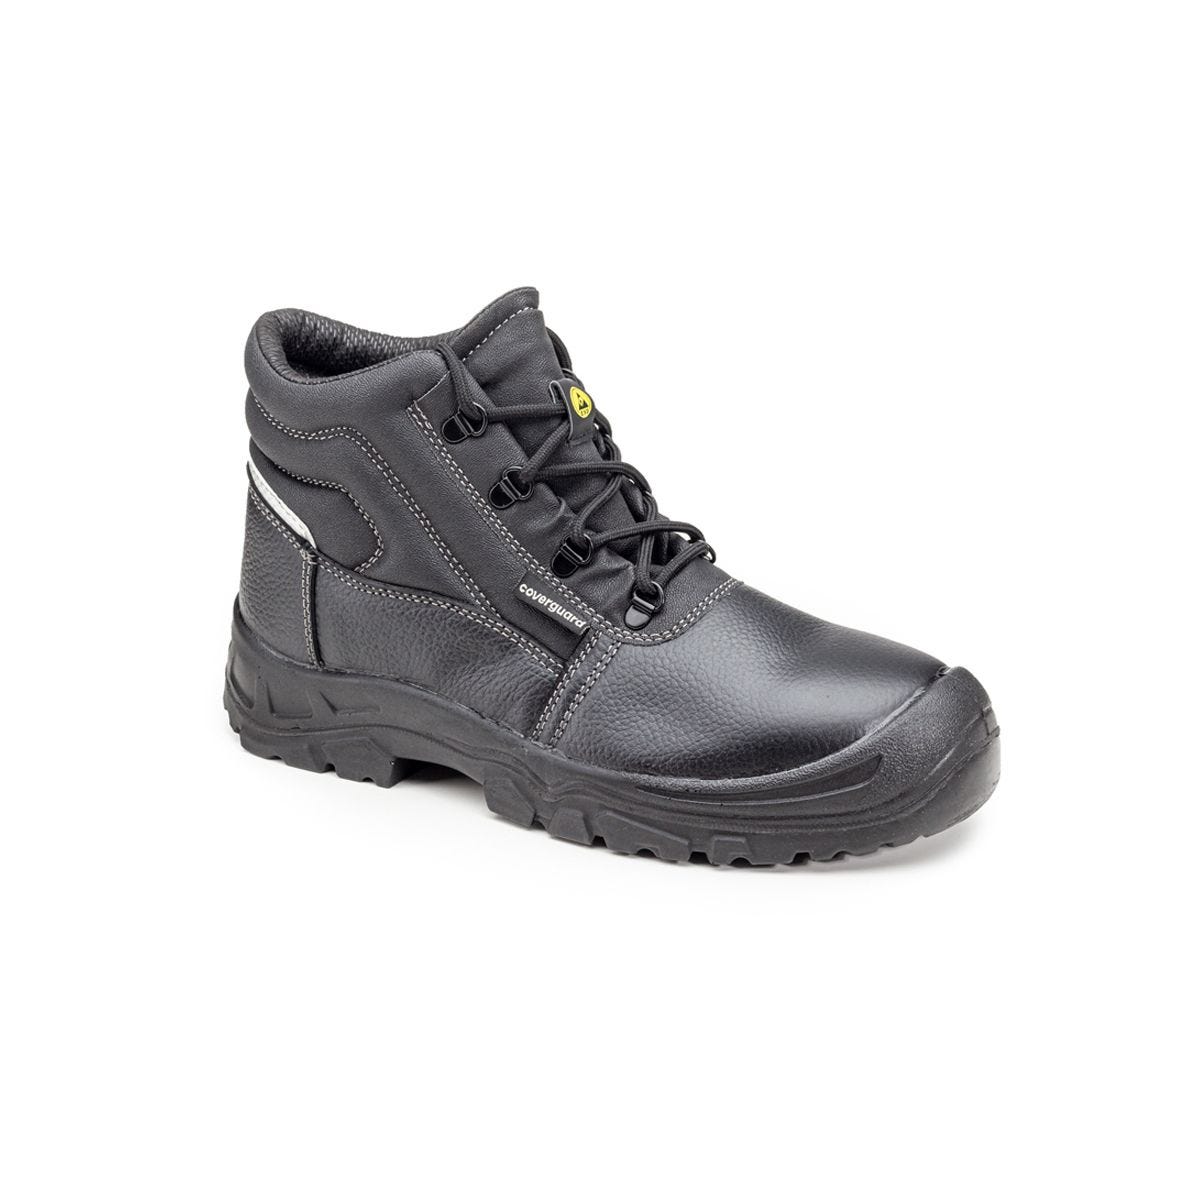 Chaussures de sécurité hautes Azurite II S3 ESD noir - Coverguard - Taille 48 0